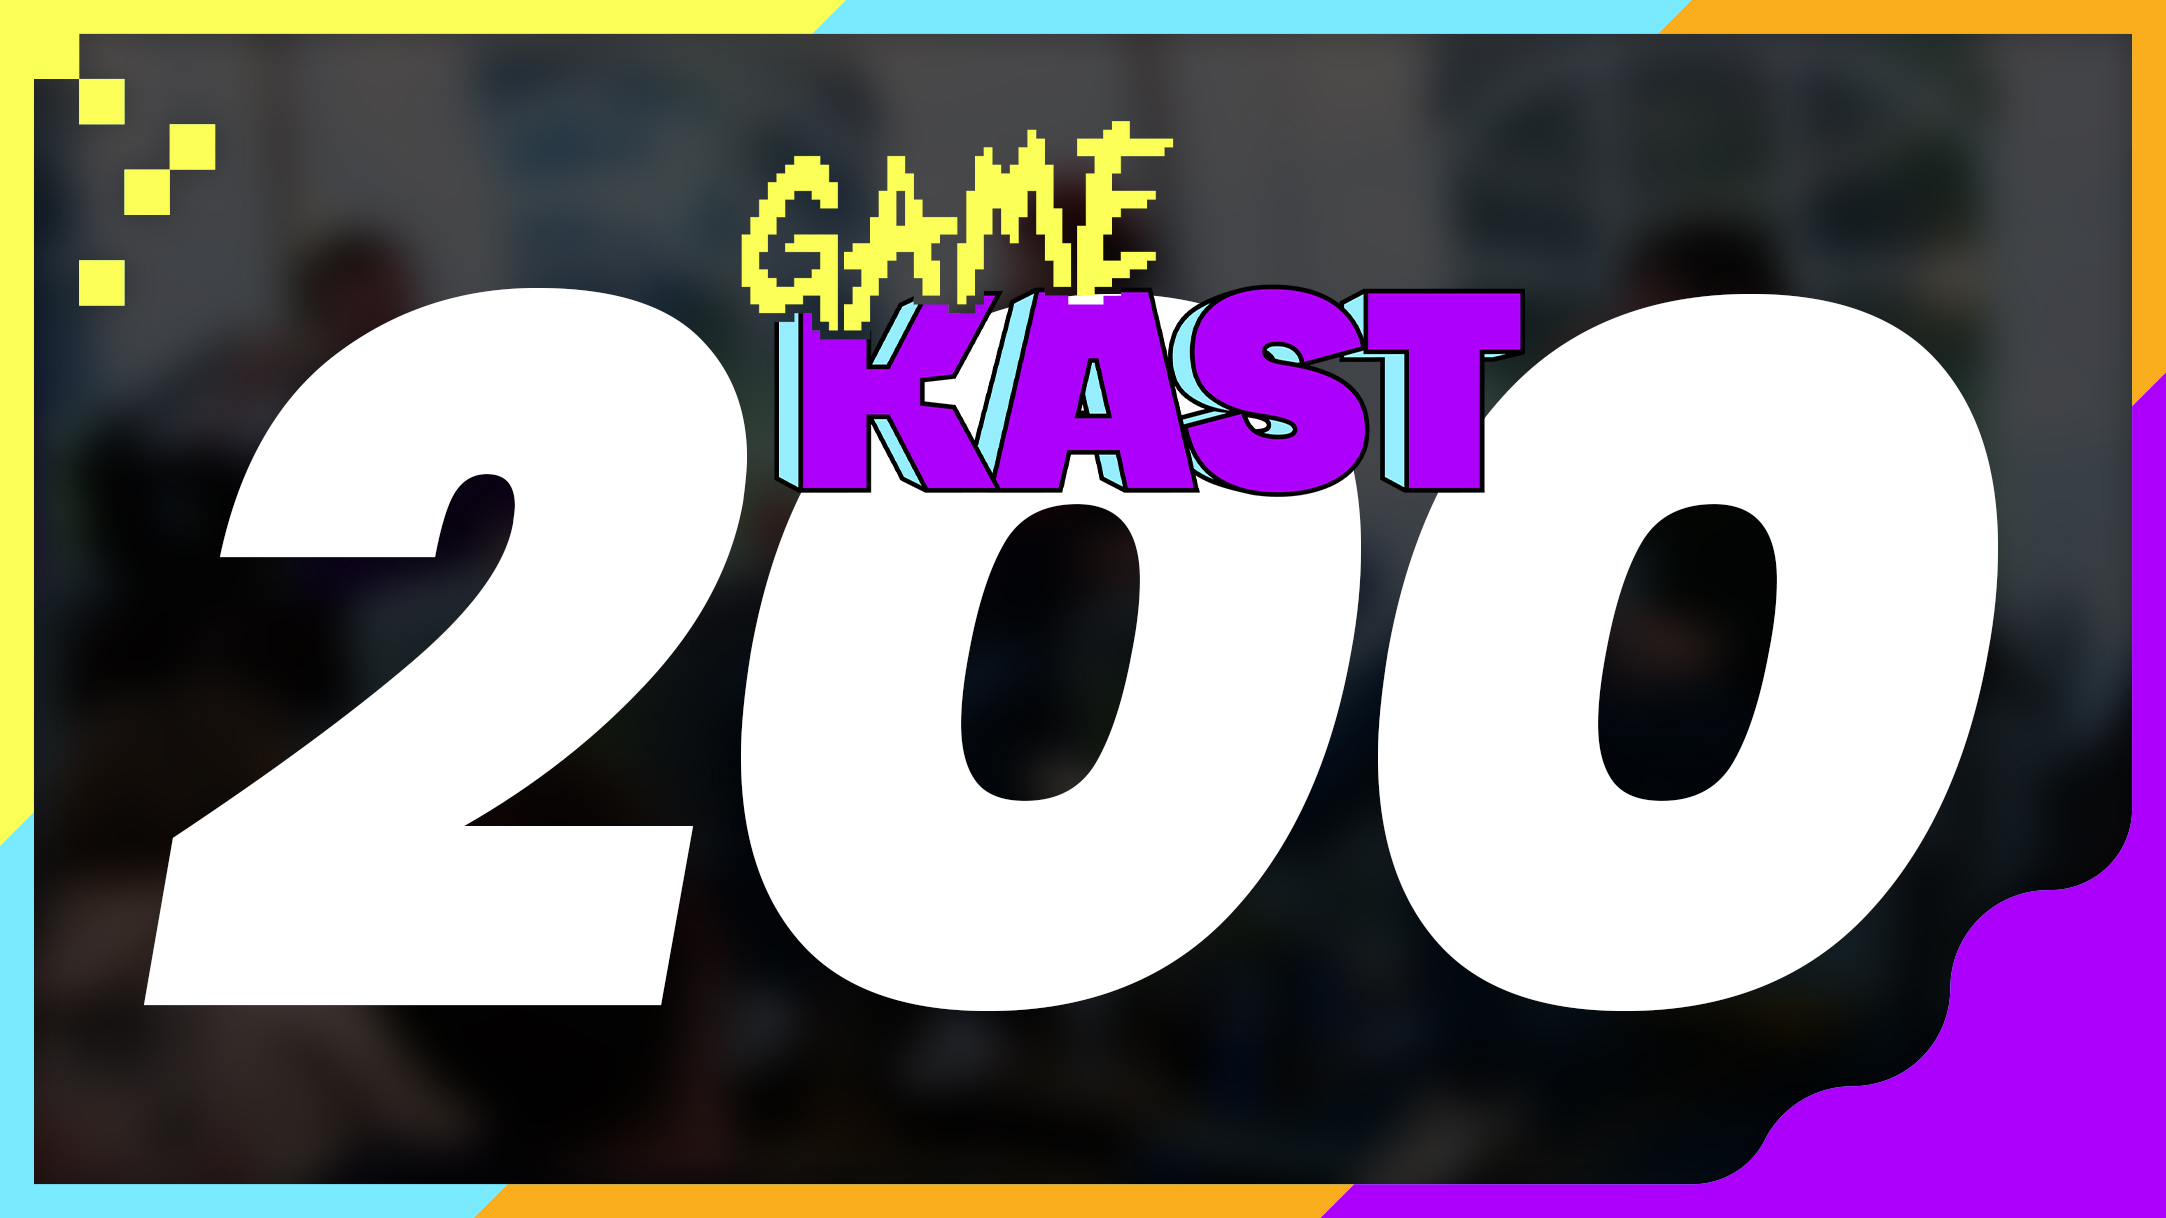 DE 200 LIVE SPECIAL! – Game Kast #200